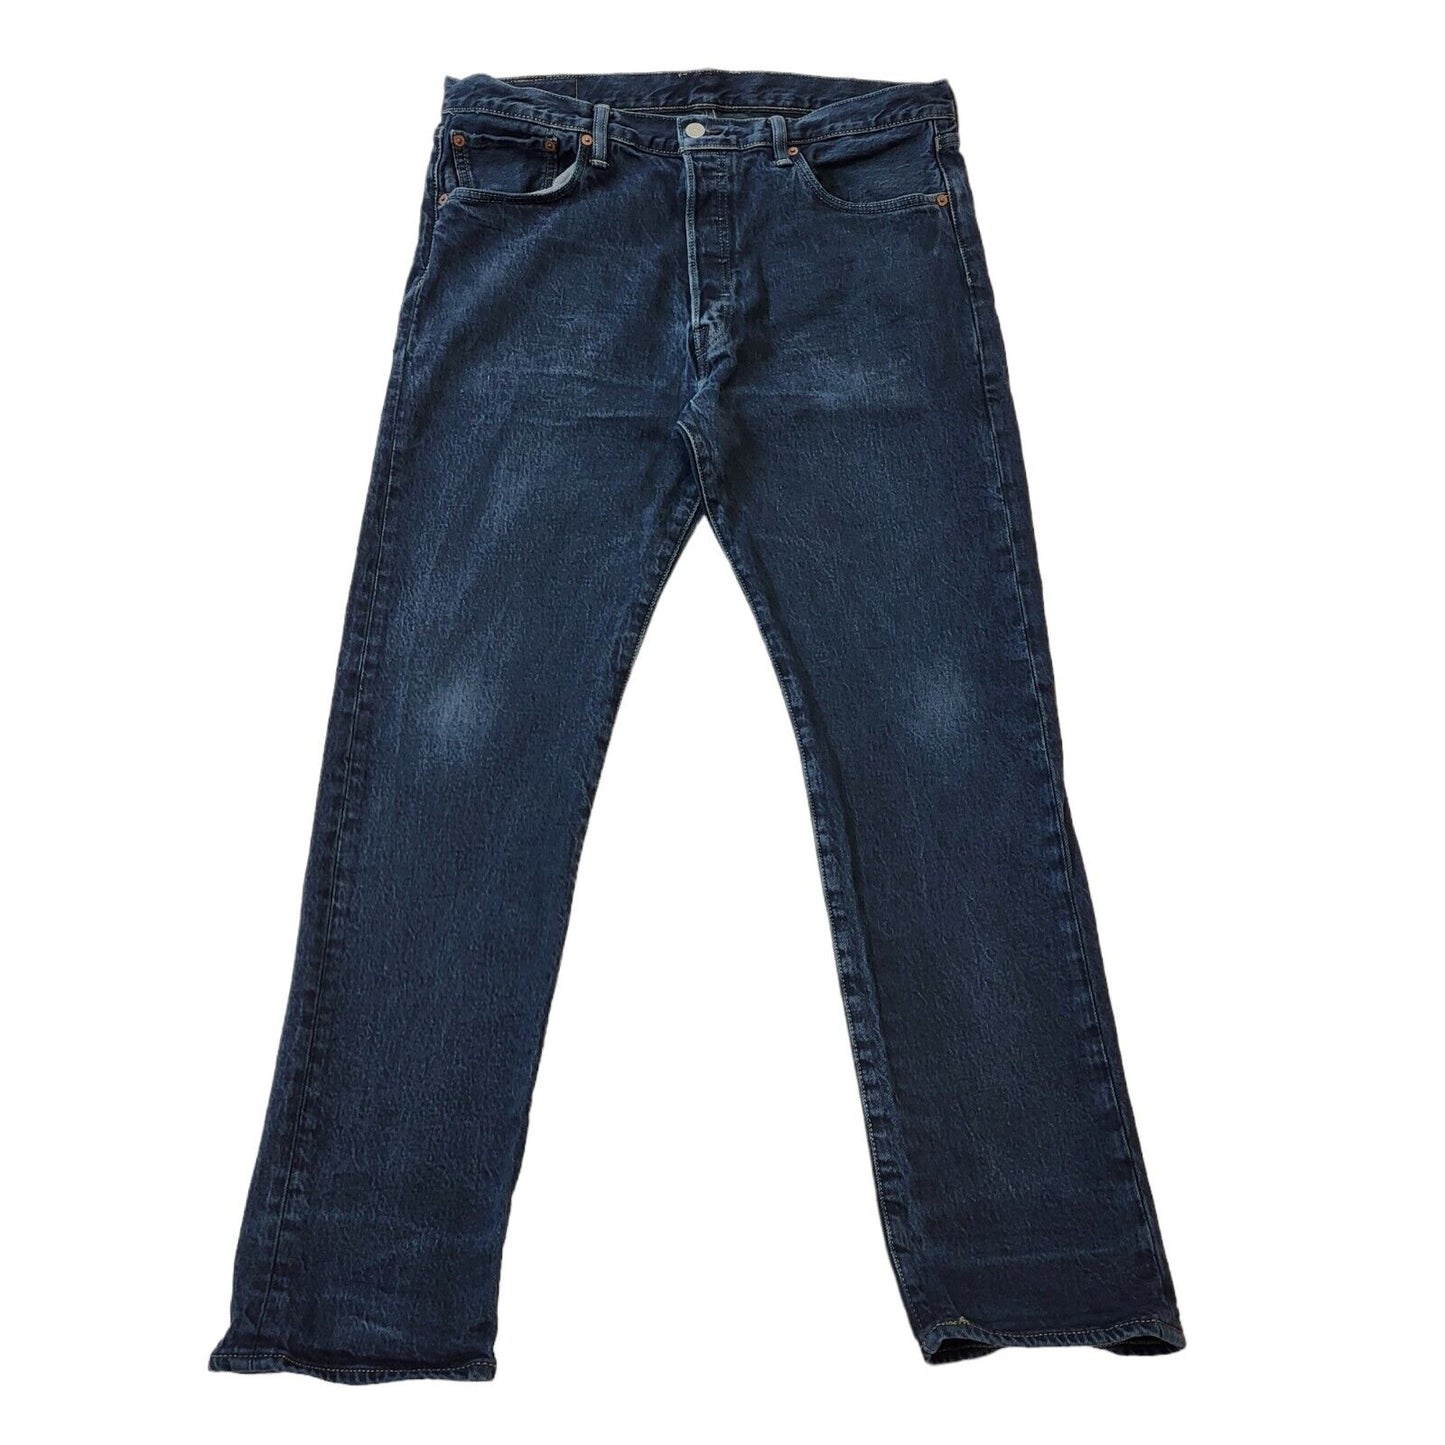 Levi's Jeans (XL)